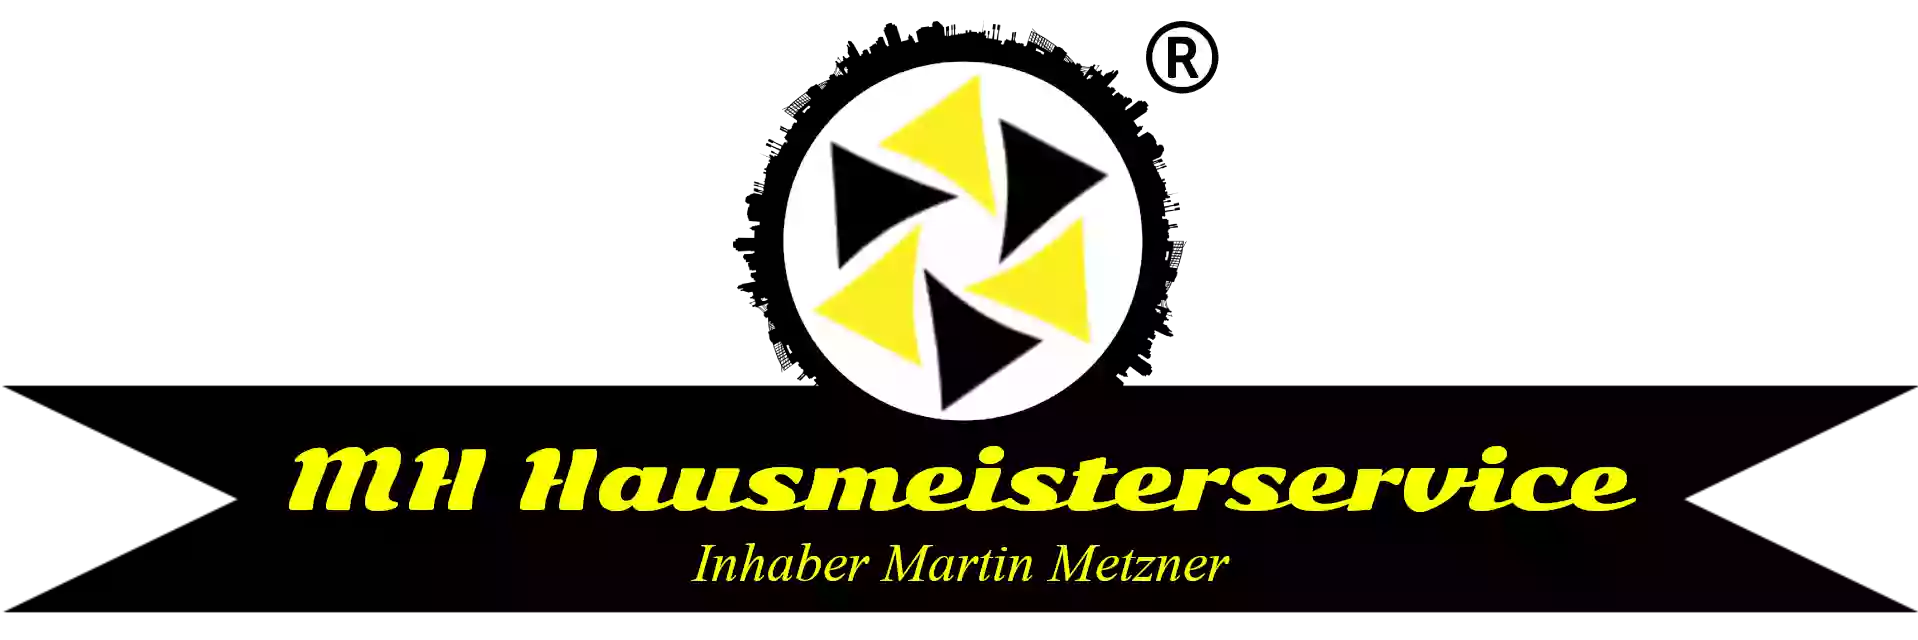 MH Hausmeisterservice Inhaber Martin Metzner